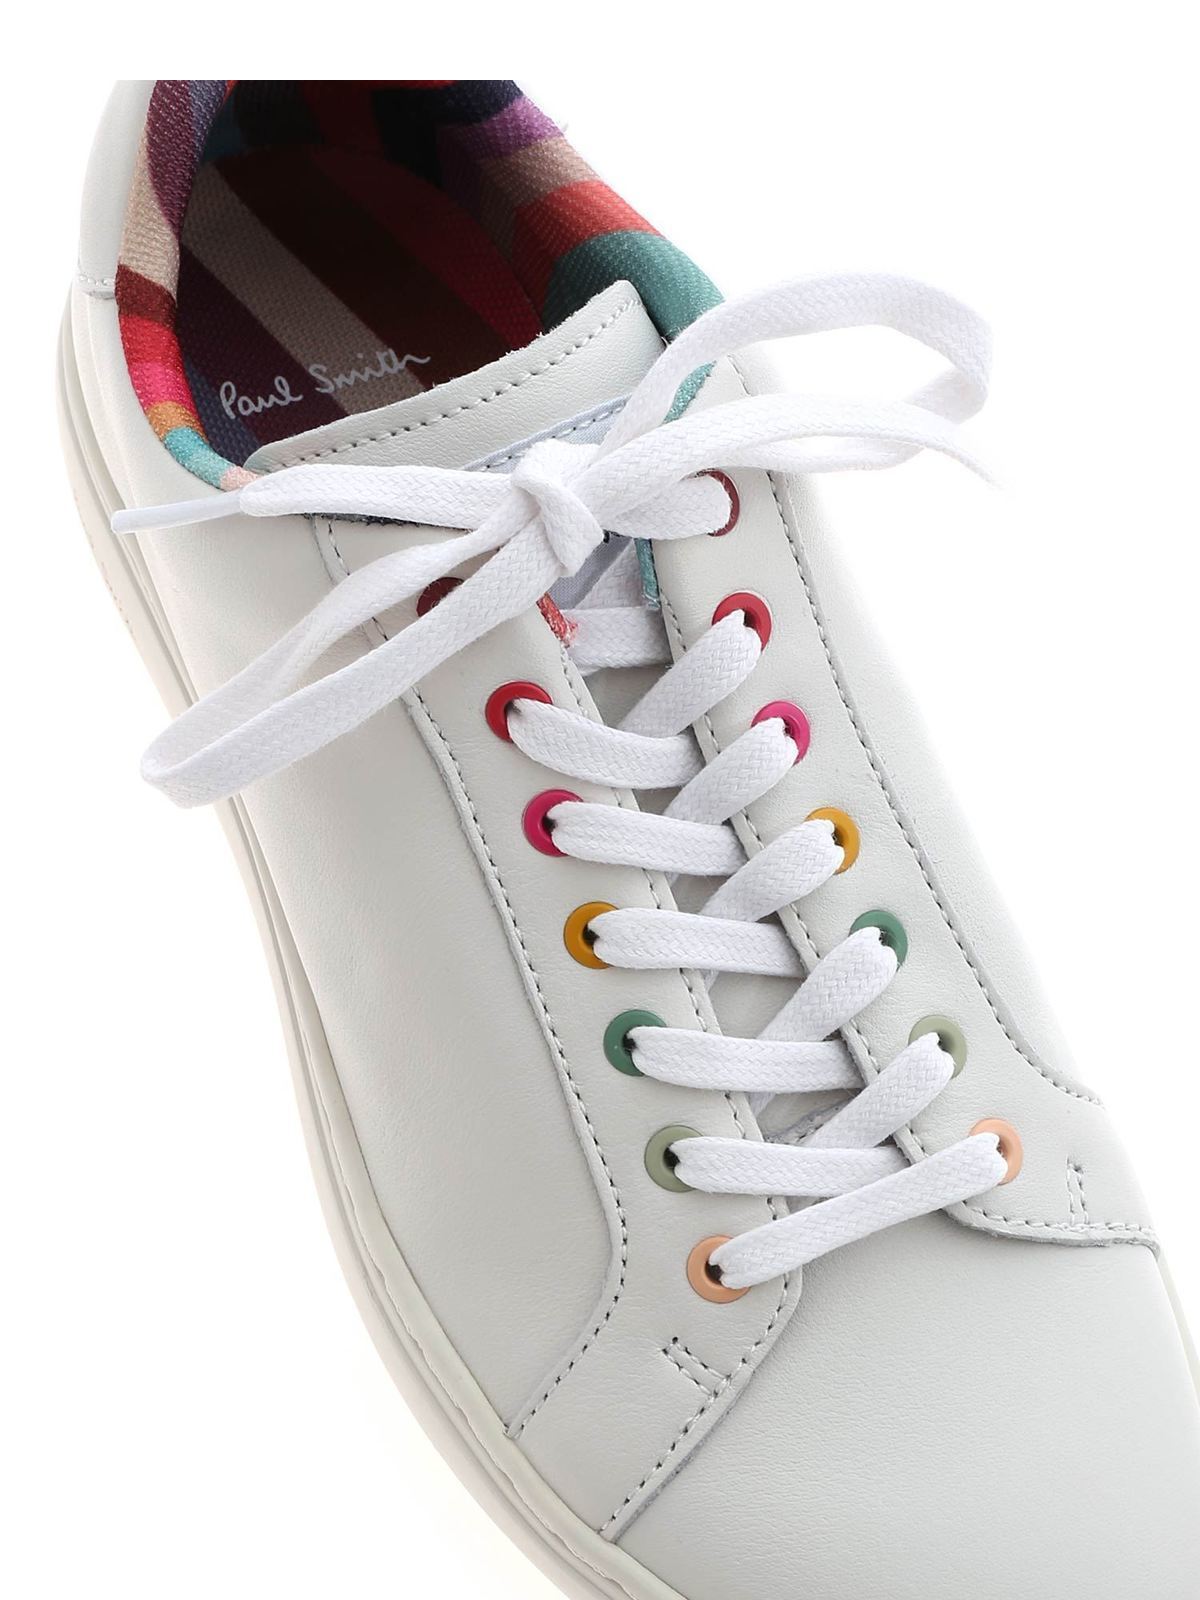 bijvoeglijk naamwoord Moskee brandwonden Trainers Paul Smith - Lapin sneakers in white - W1SLAP42ECAS01